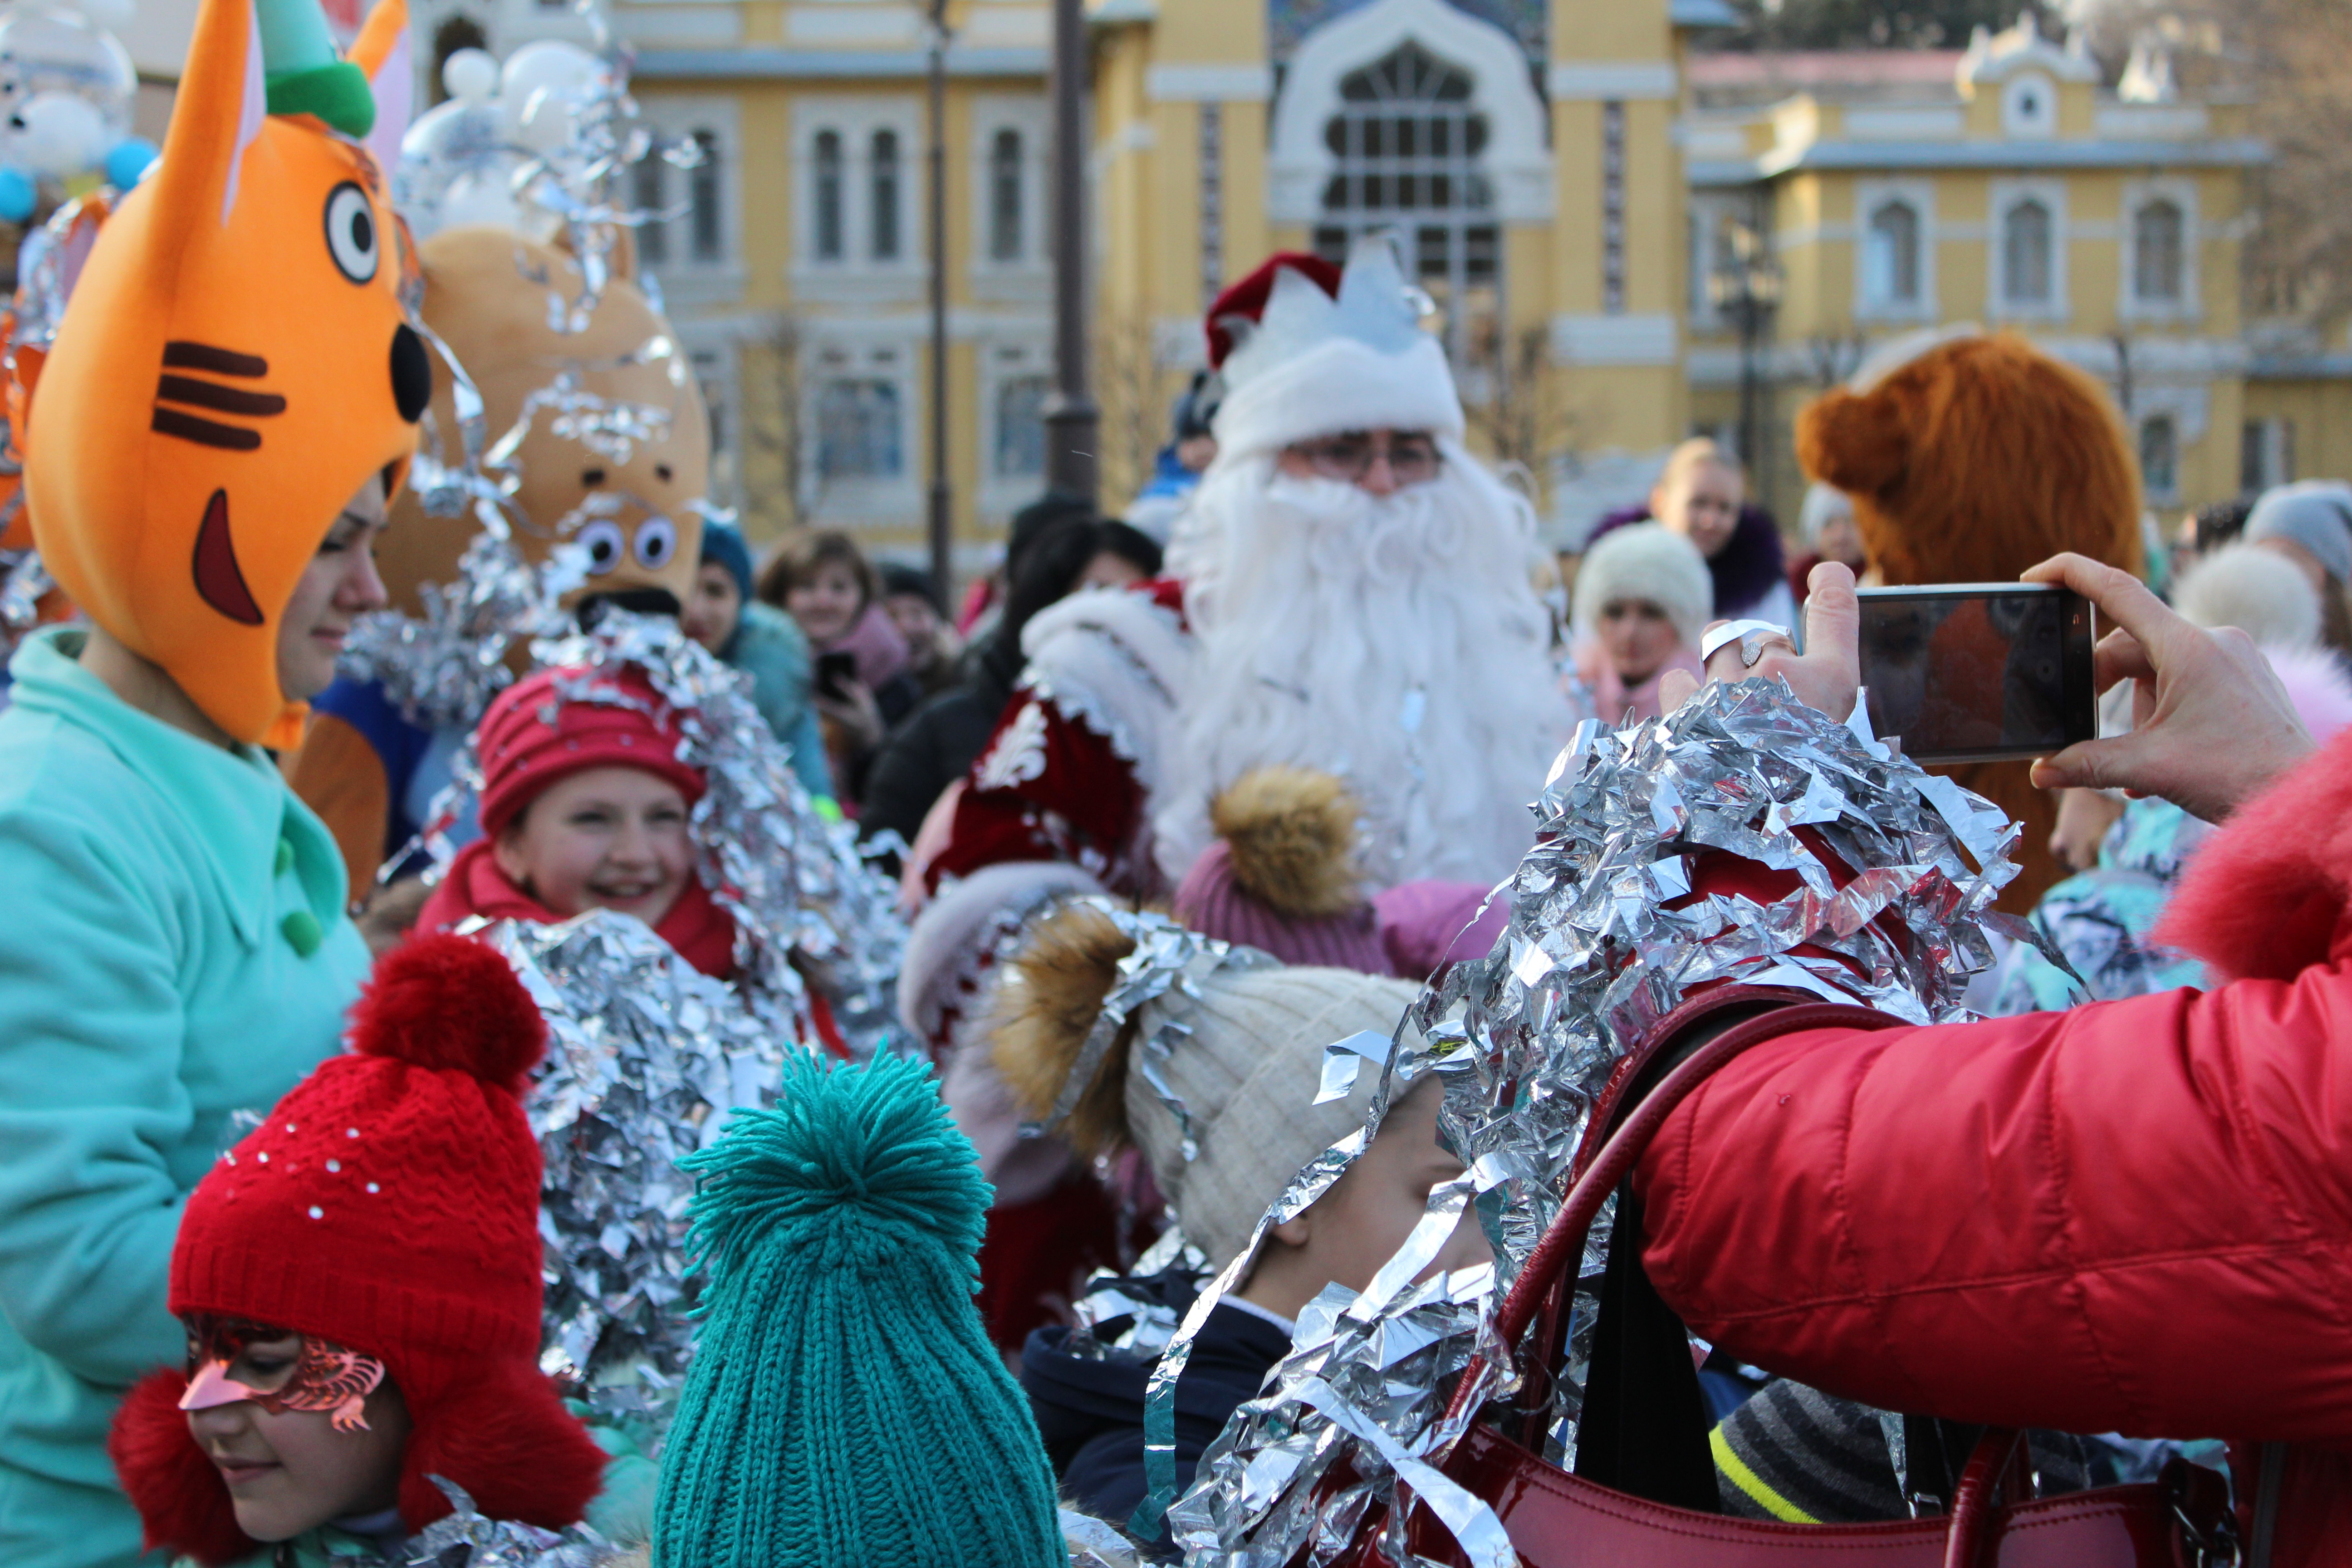 В Кисловодске продолжаются праздничные гулянья